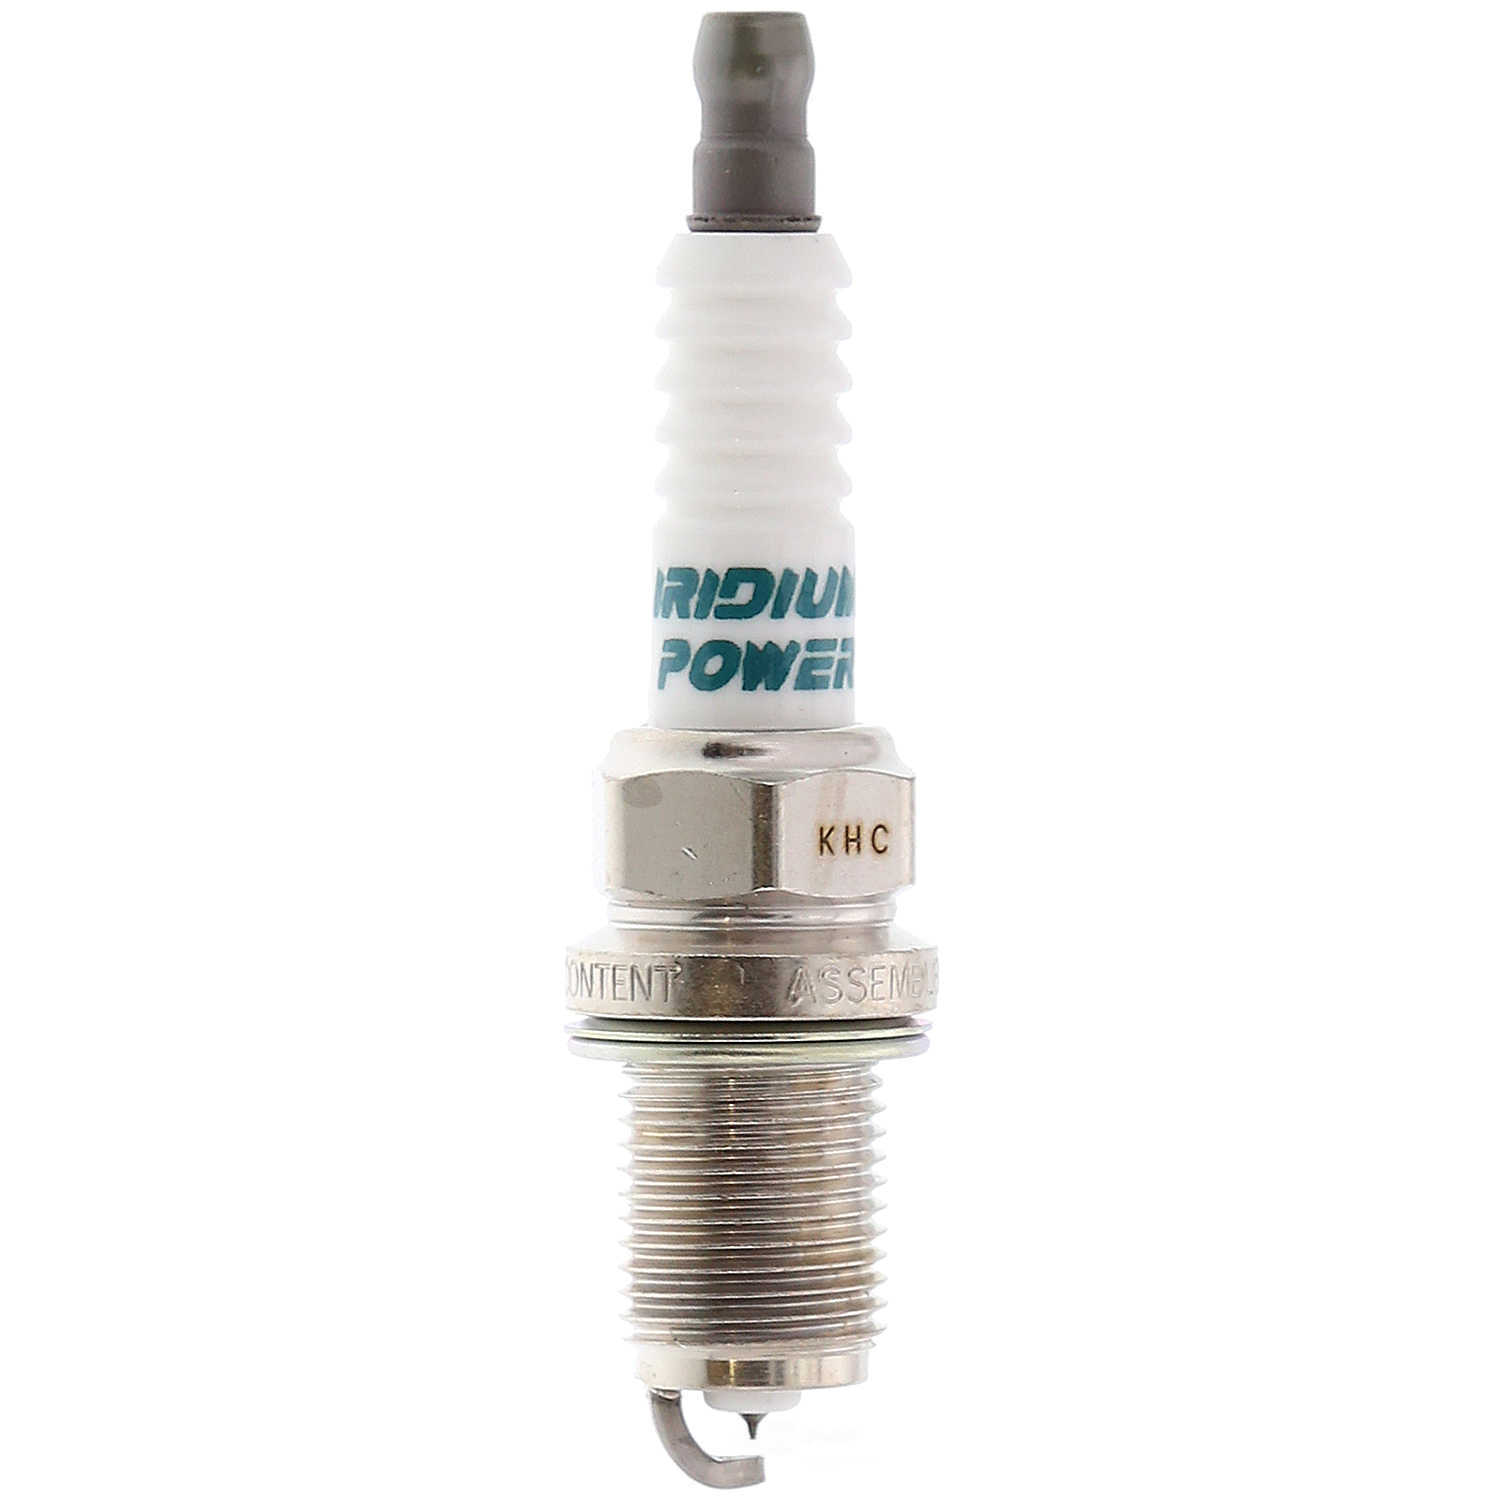 DENSO - Iridium Power Spark Plug - NDE 5310